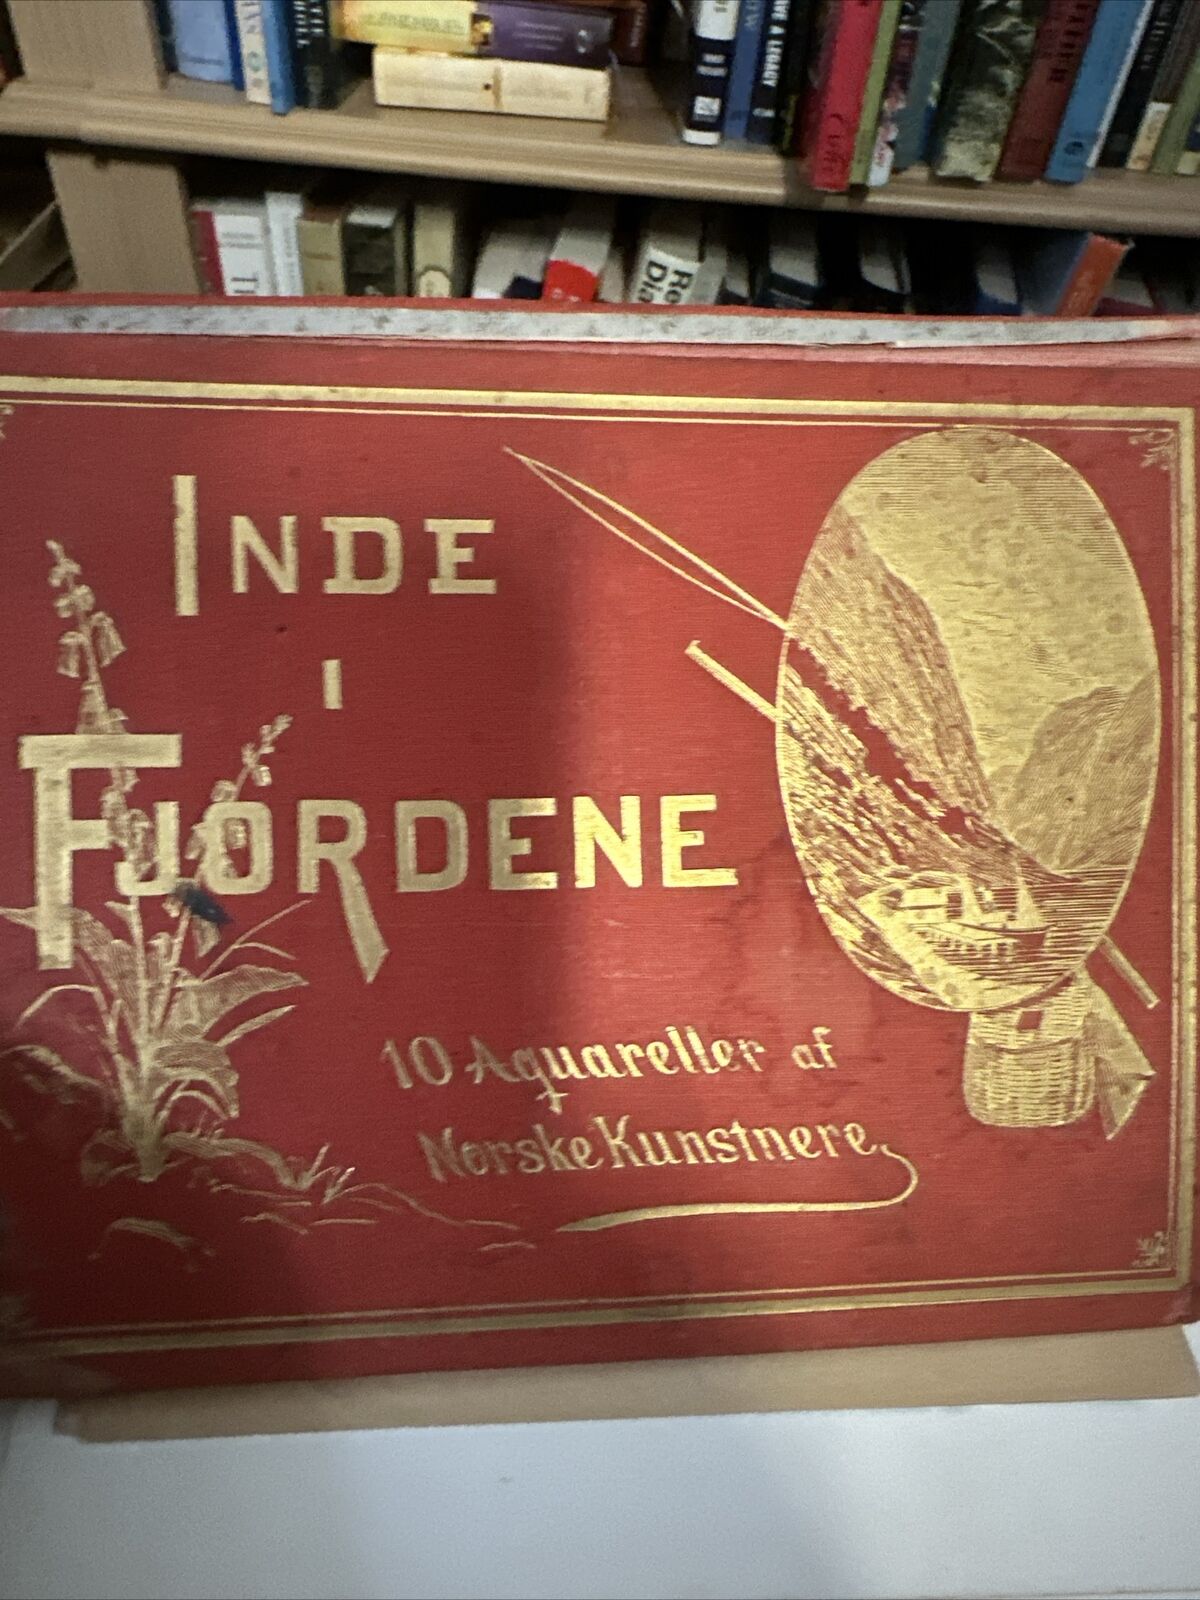 Antique Post cards Inde I Fjordene 10 Aquareller of Norske Kunstnere